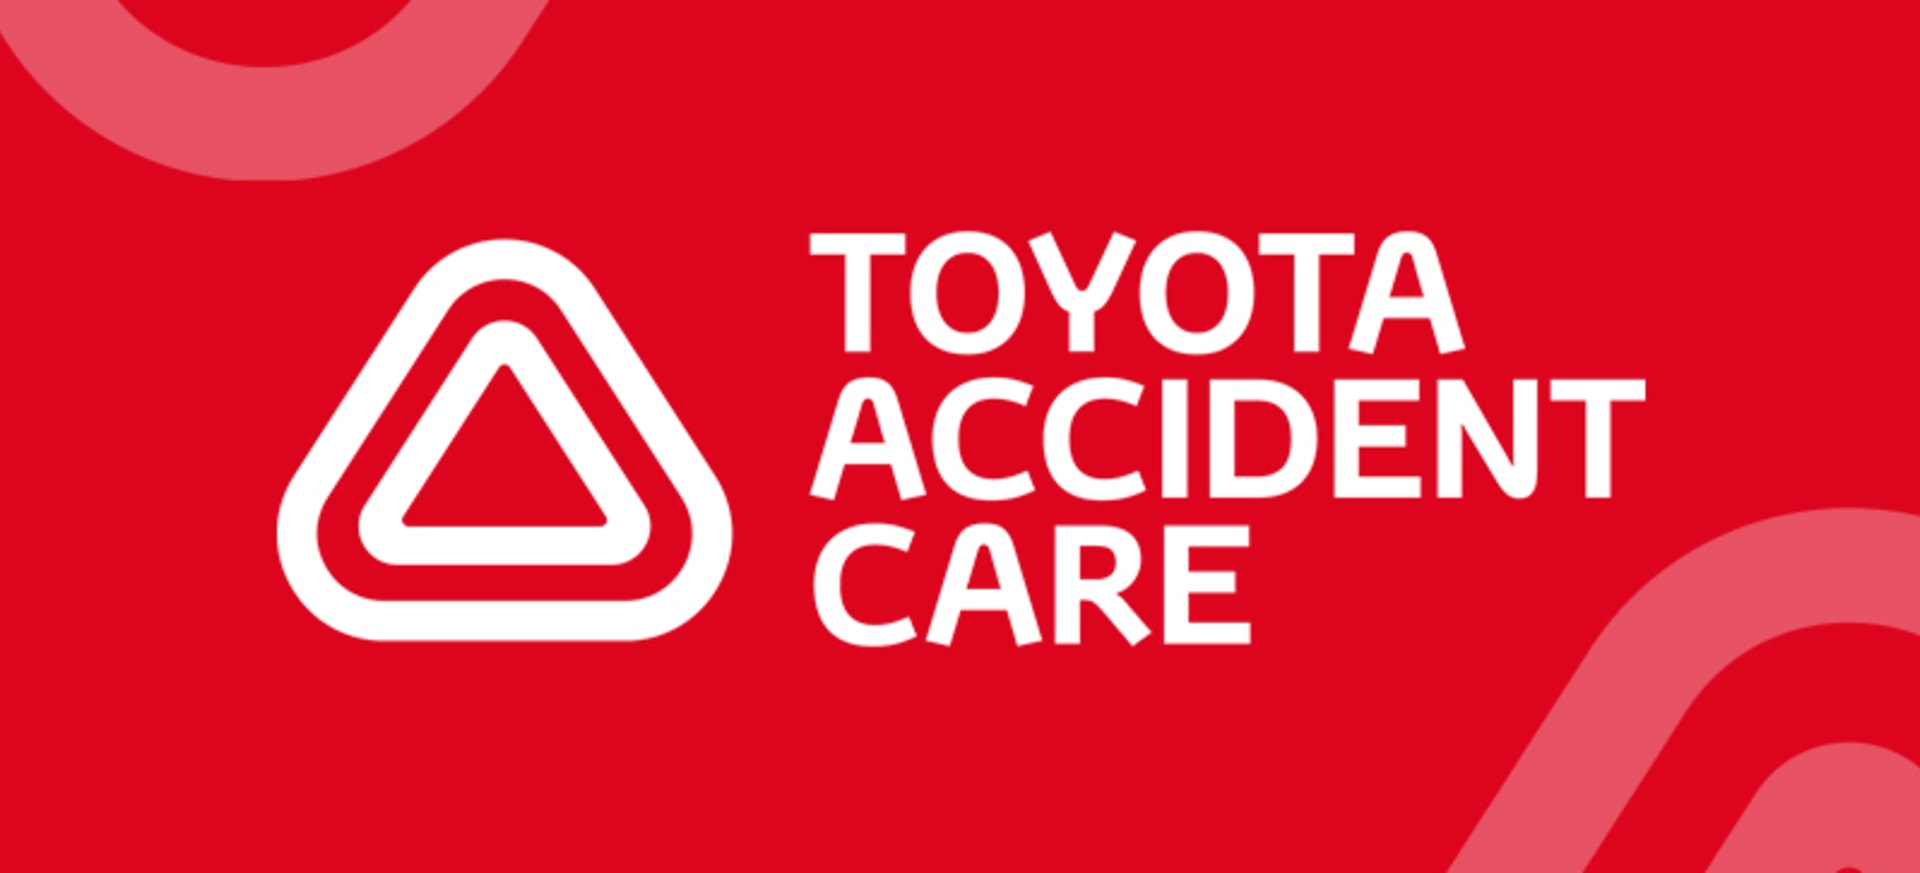 Toyota Accident Repair Mobile Image